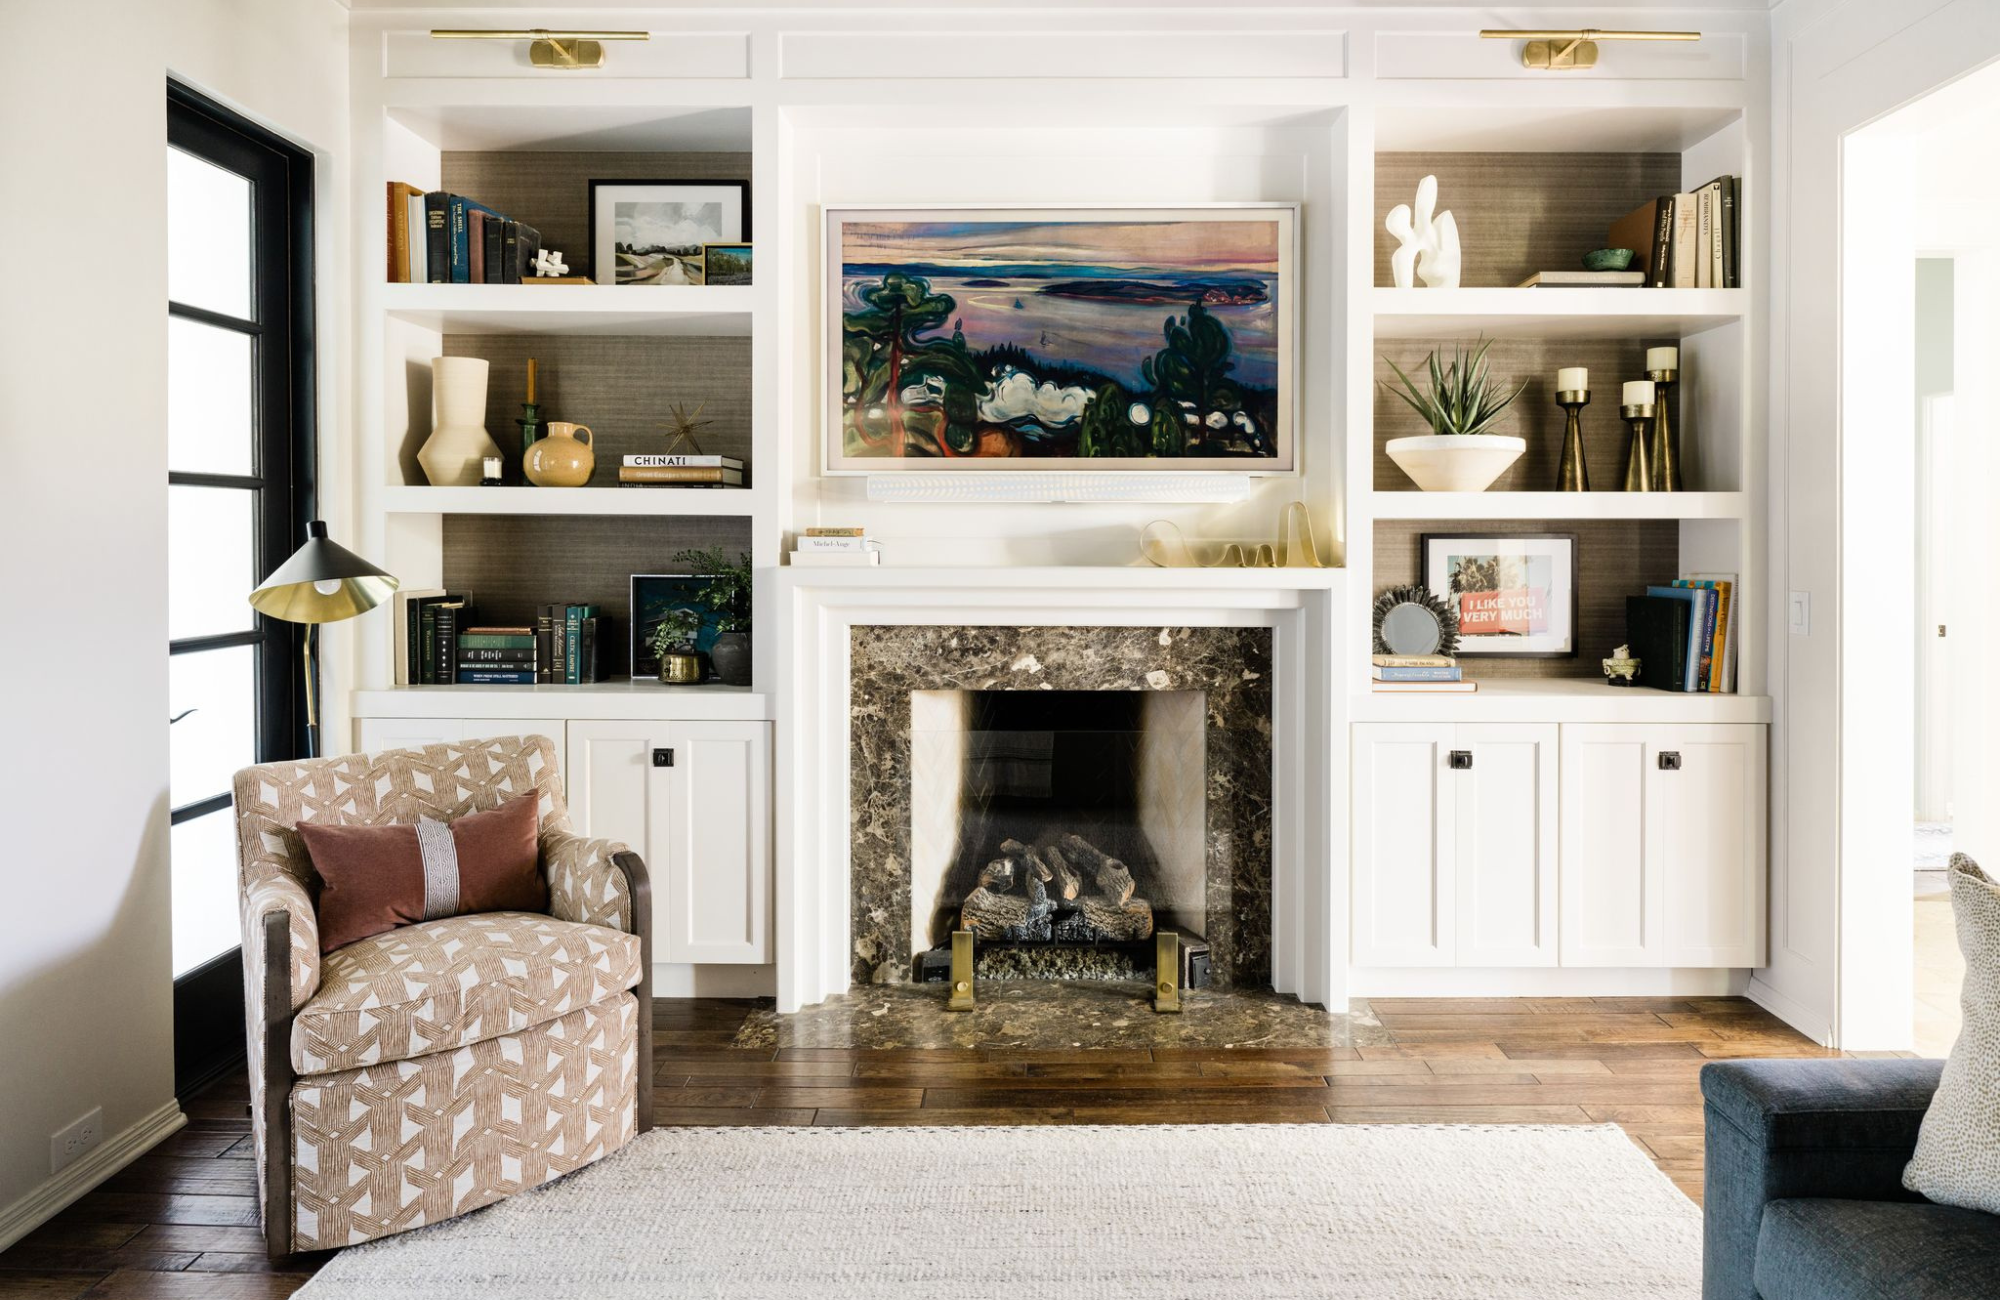 morningside tx living room custom shelving design styleberry creative interiors stone fireplace white built-in upholstered chair